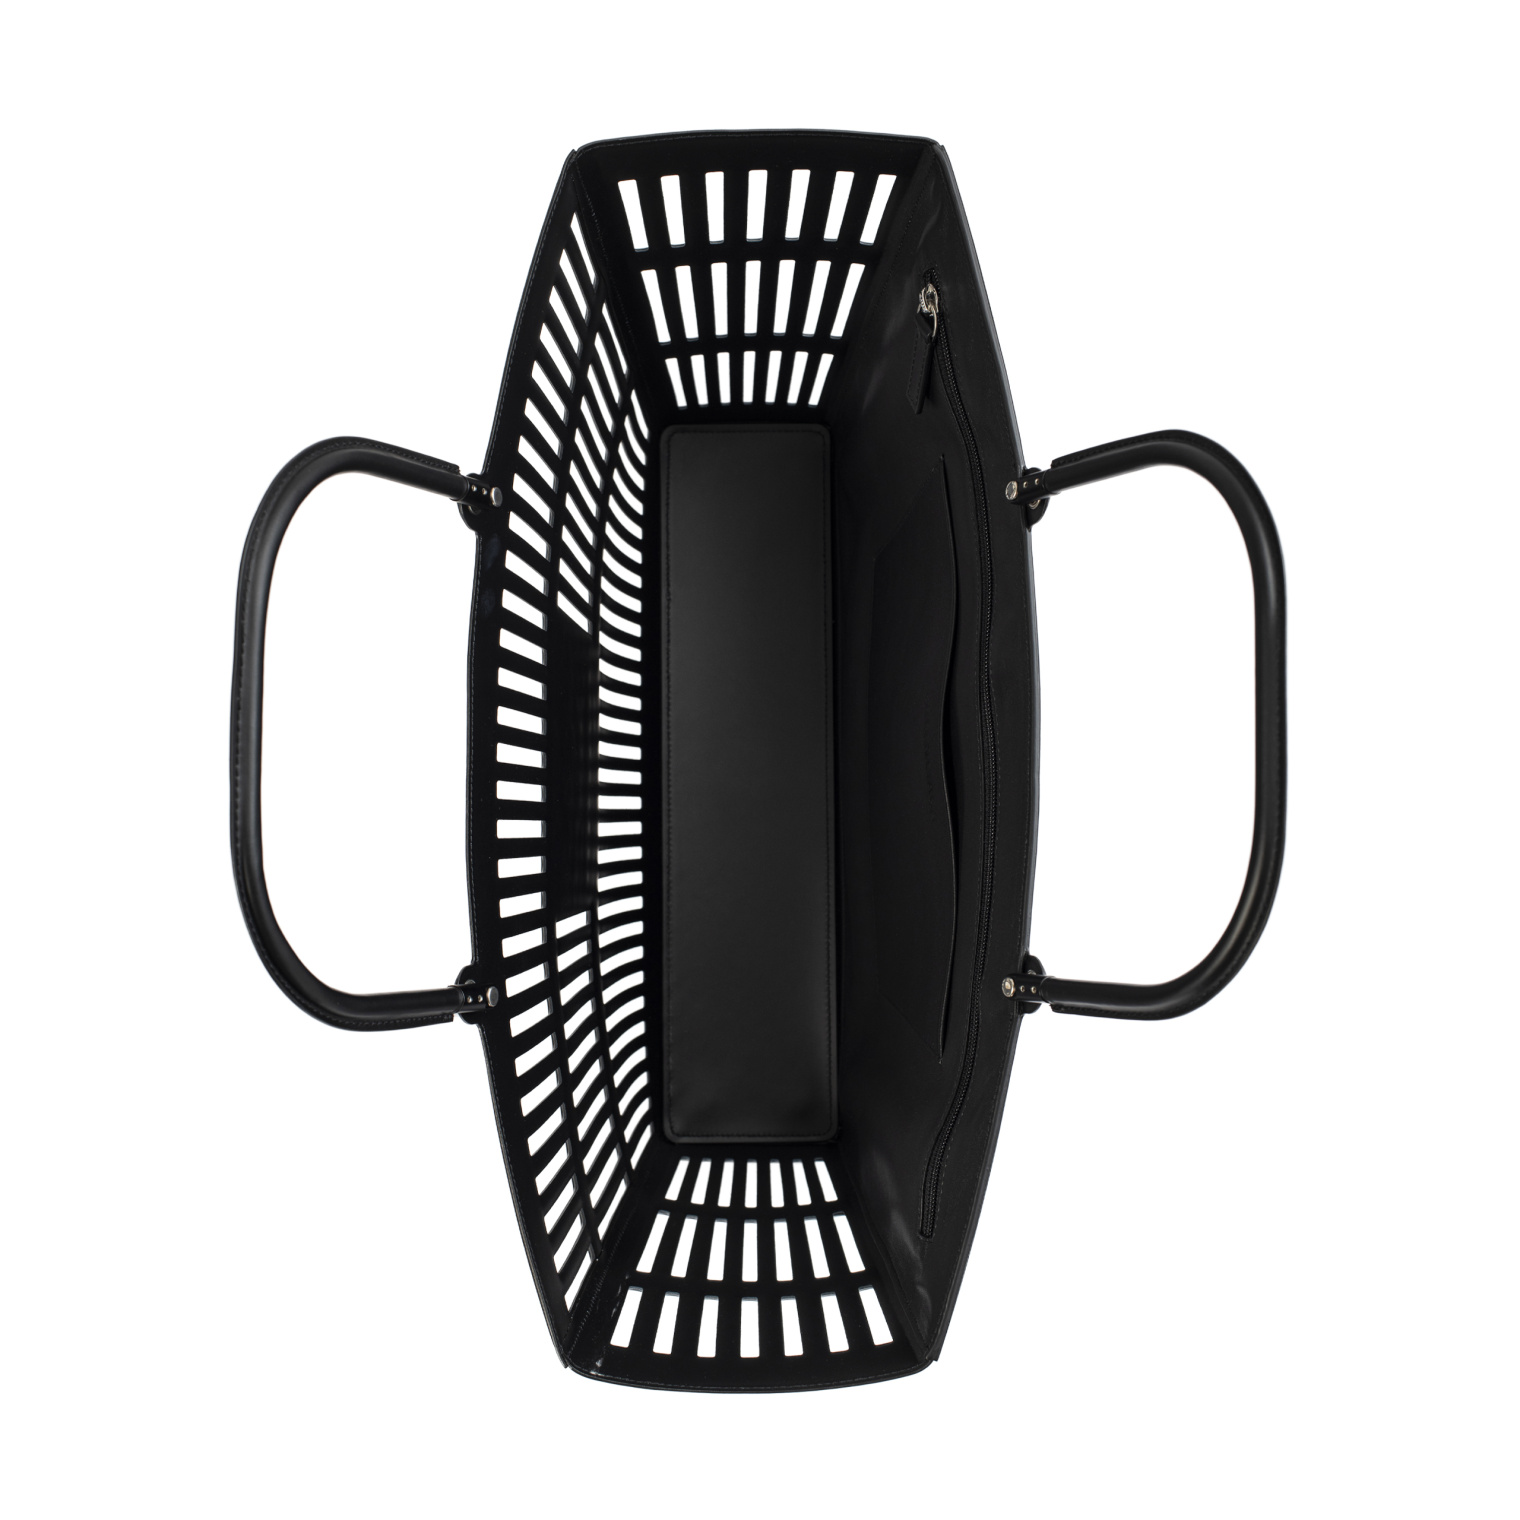 Balenciaga Черная сумка Mag Basket Large